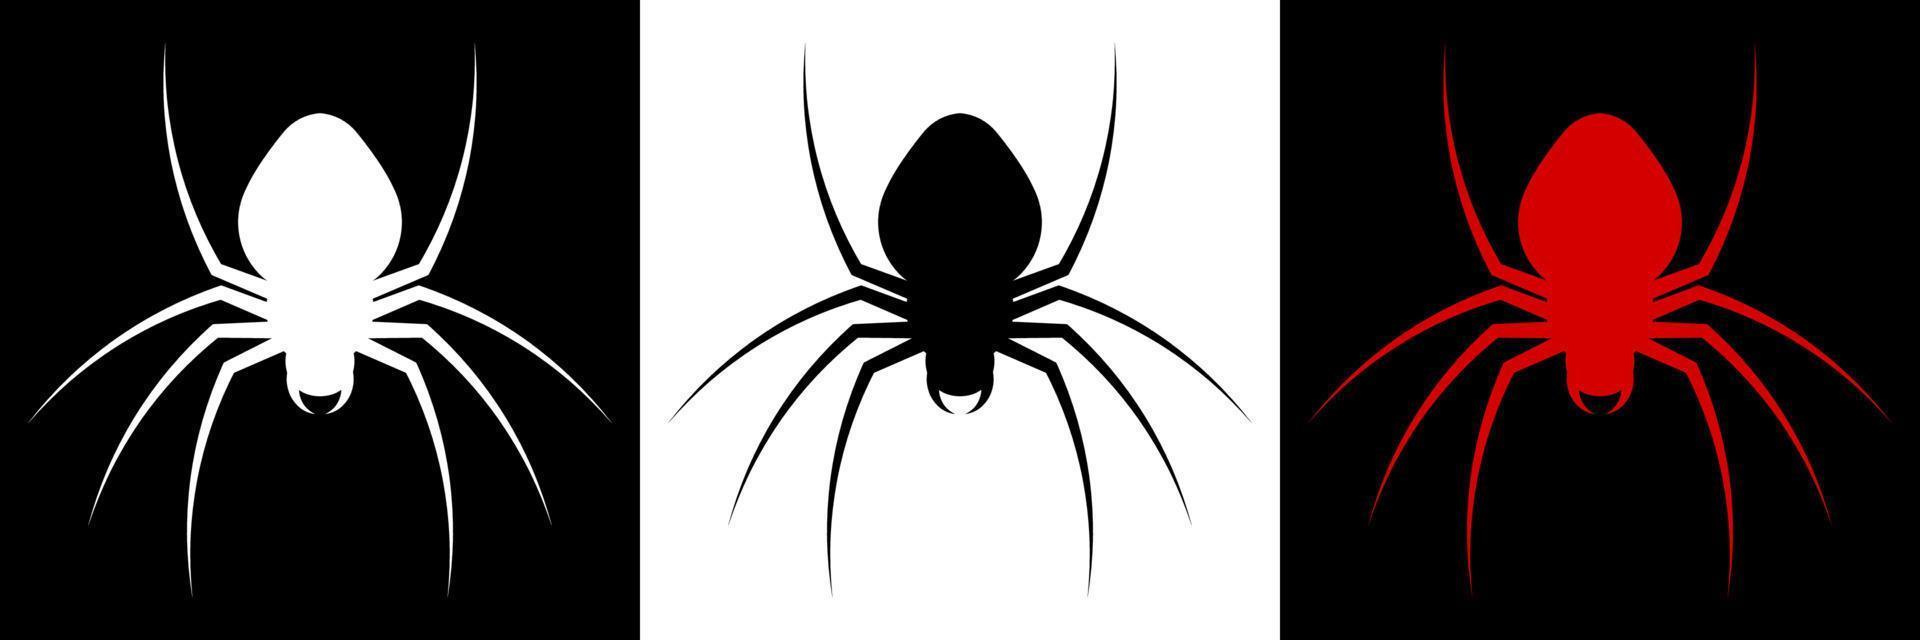 icono de araña para la decoración de banner web de halloween. insectos venenosos peligrosos. portadores de enfermedades. un cazador despiadado. vector minimalista